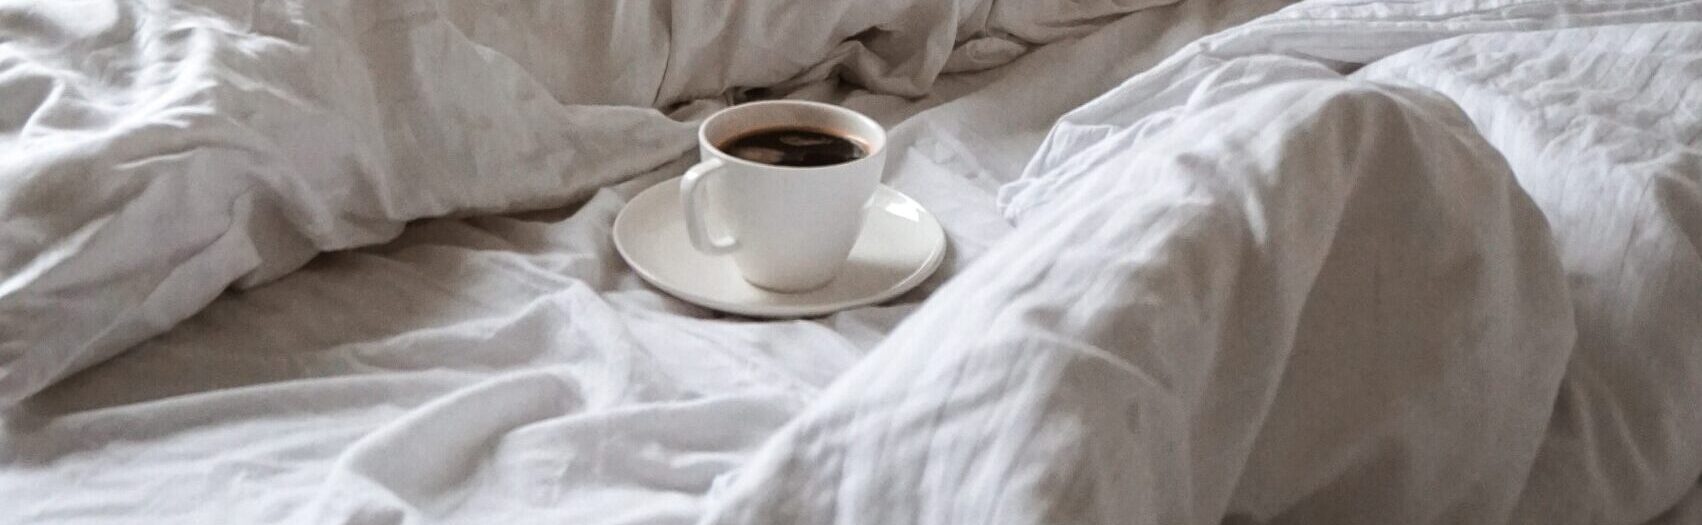 Kaffe på sengen